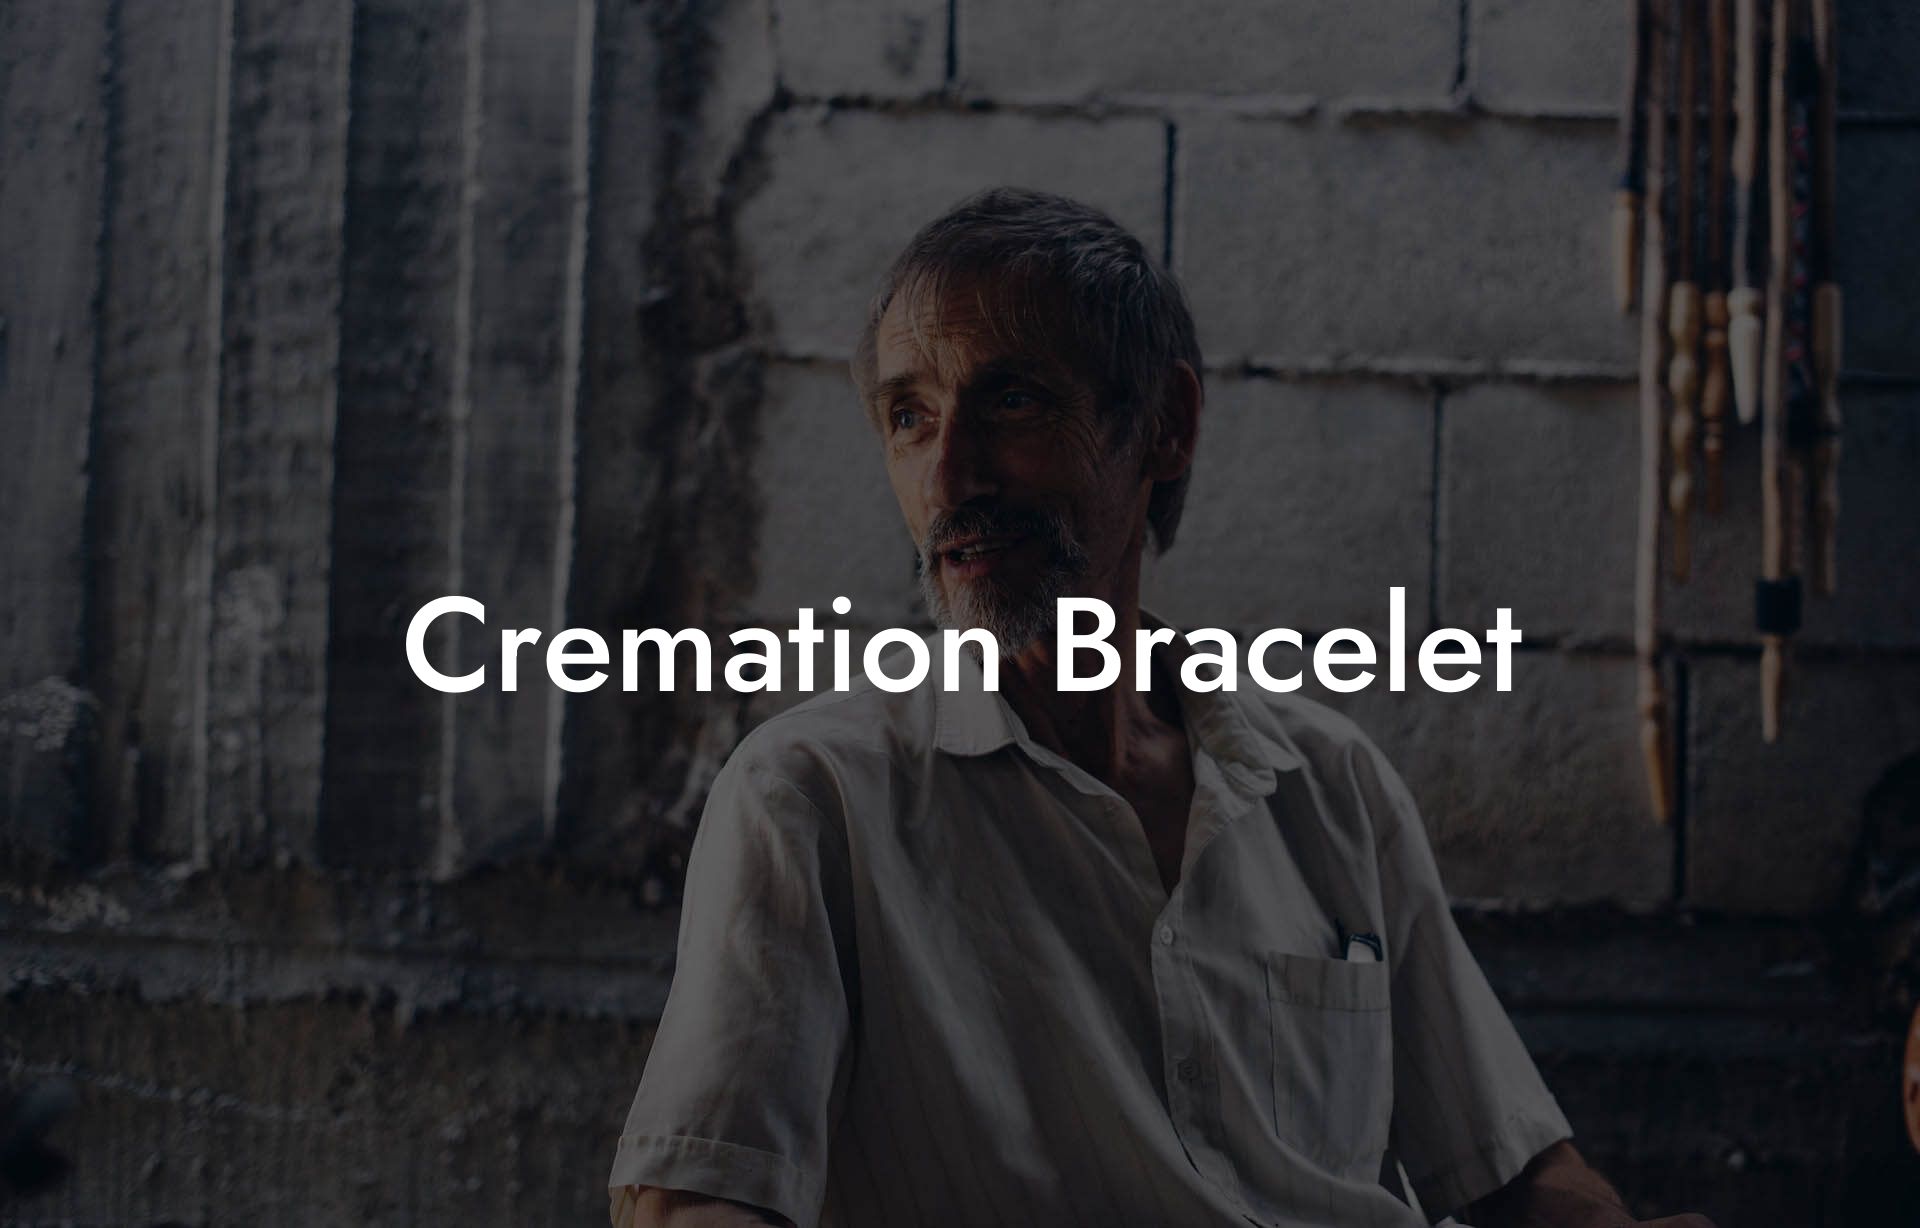 Cremation Bracelet